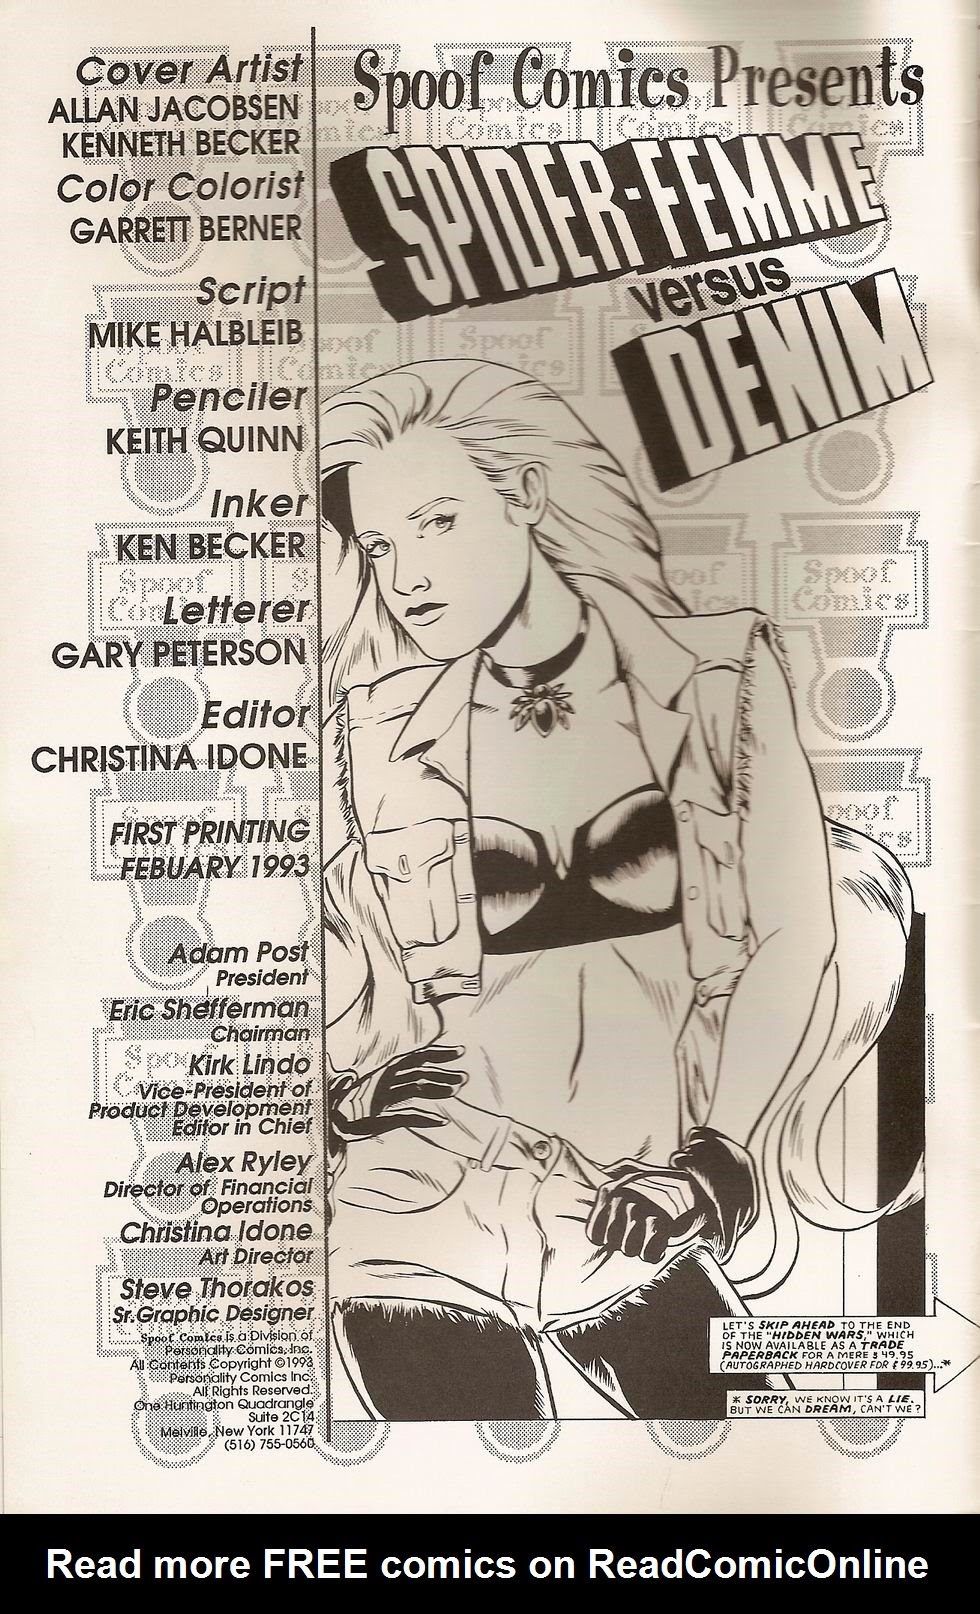 Read online Spider Femme Versus Denim comic -  Issue # Full - 2